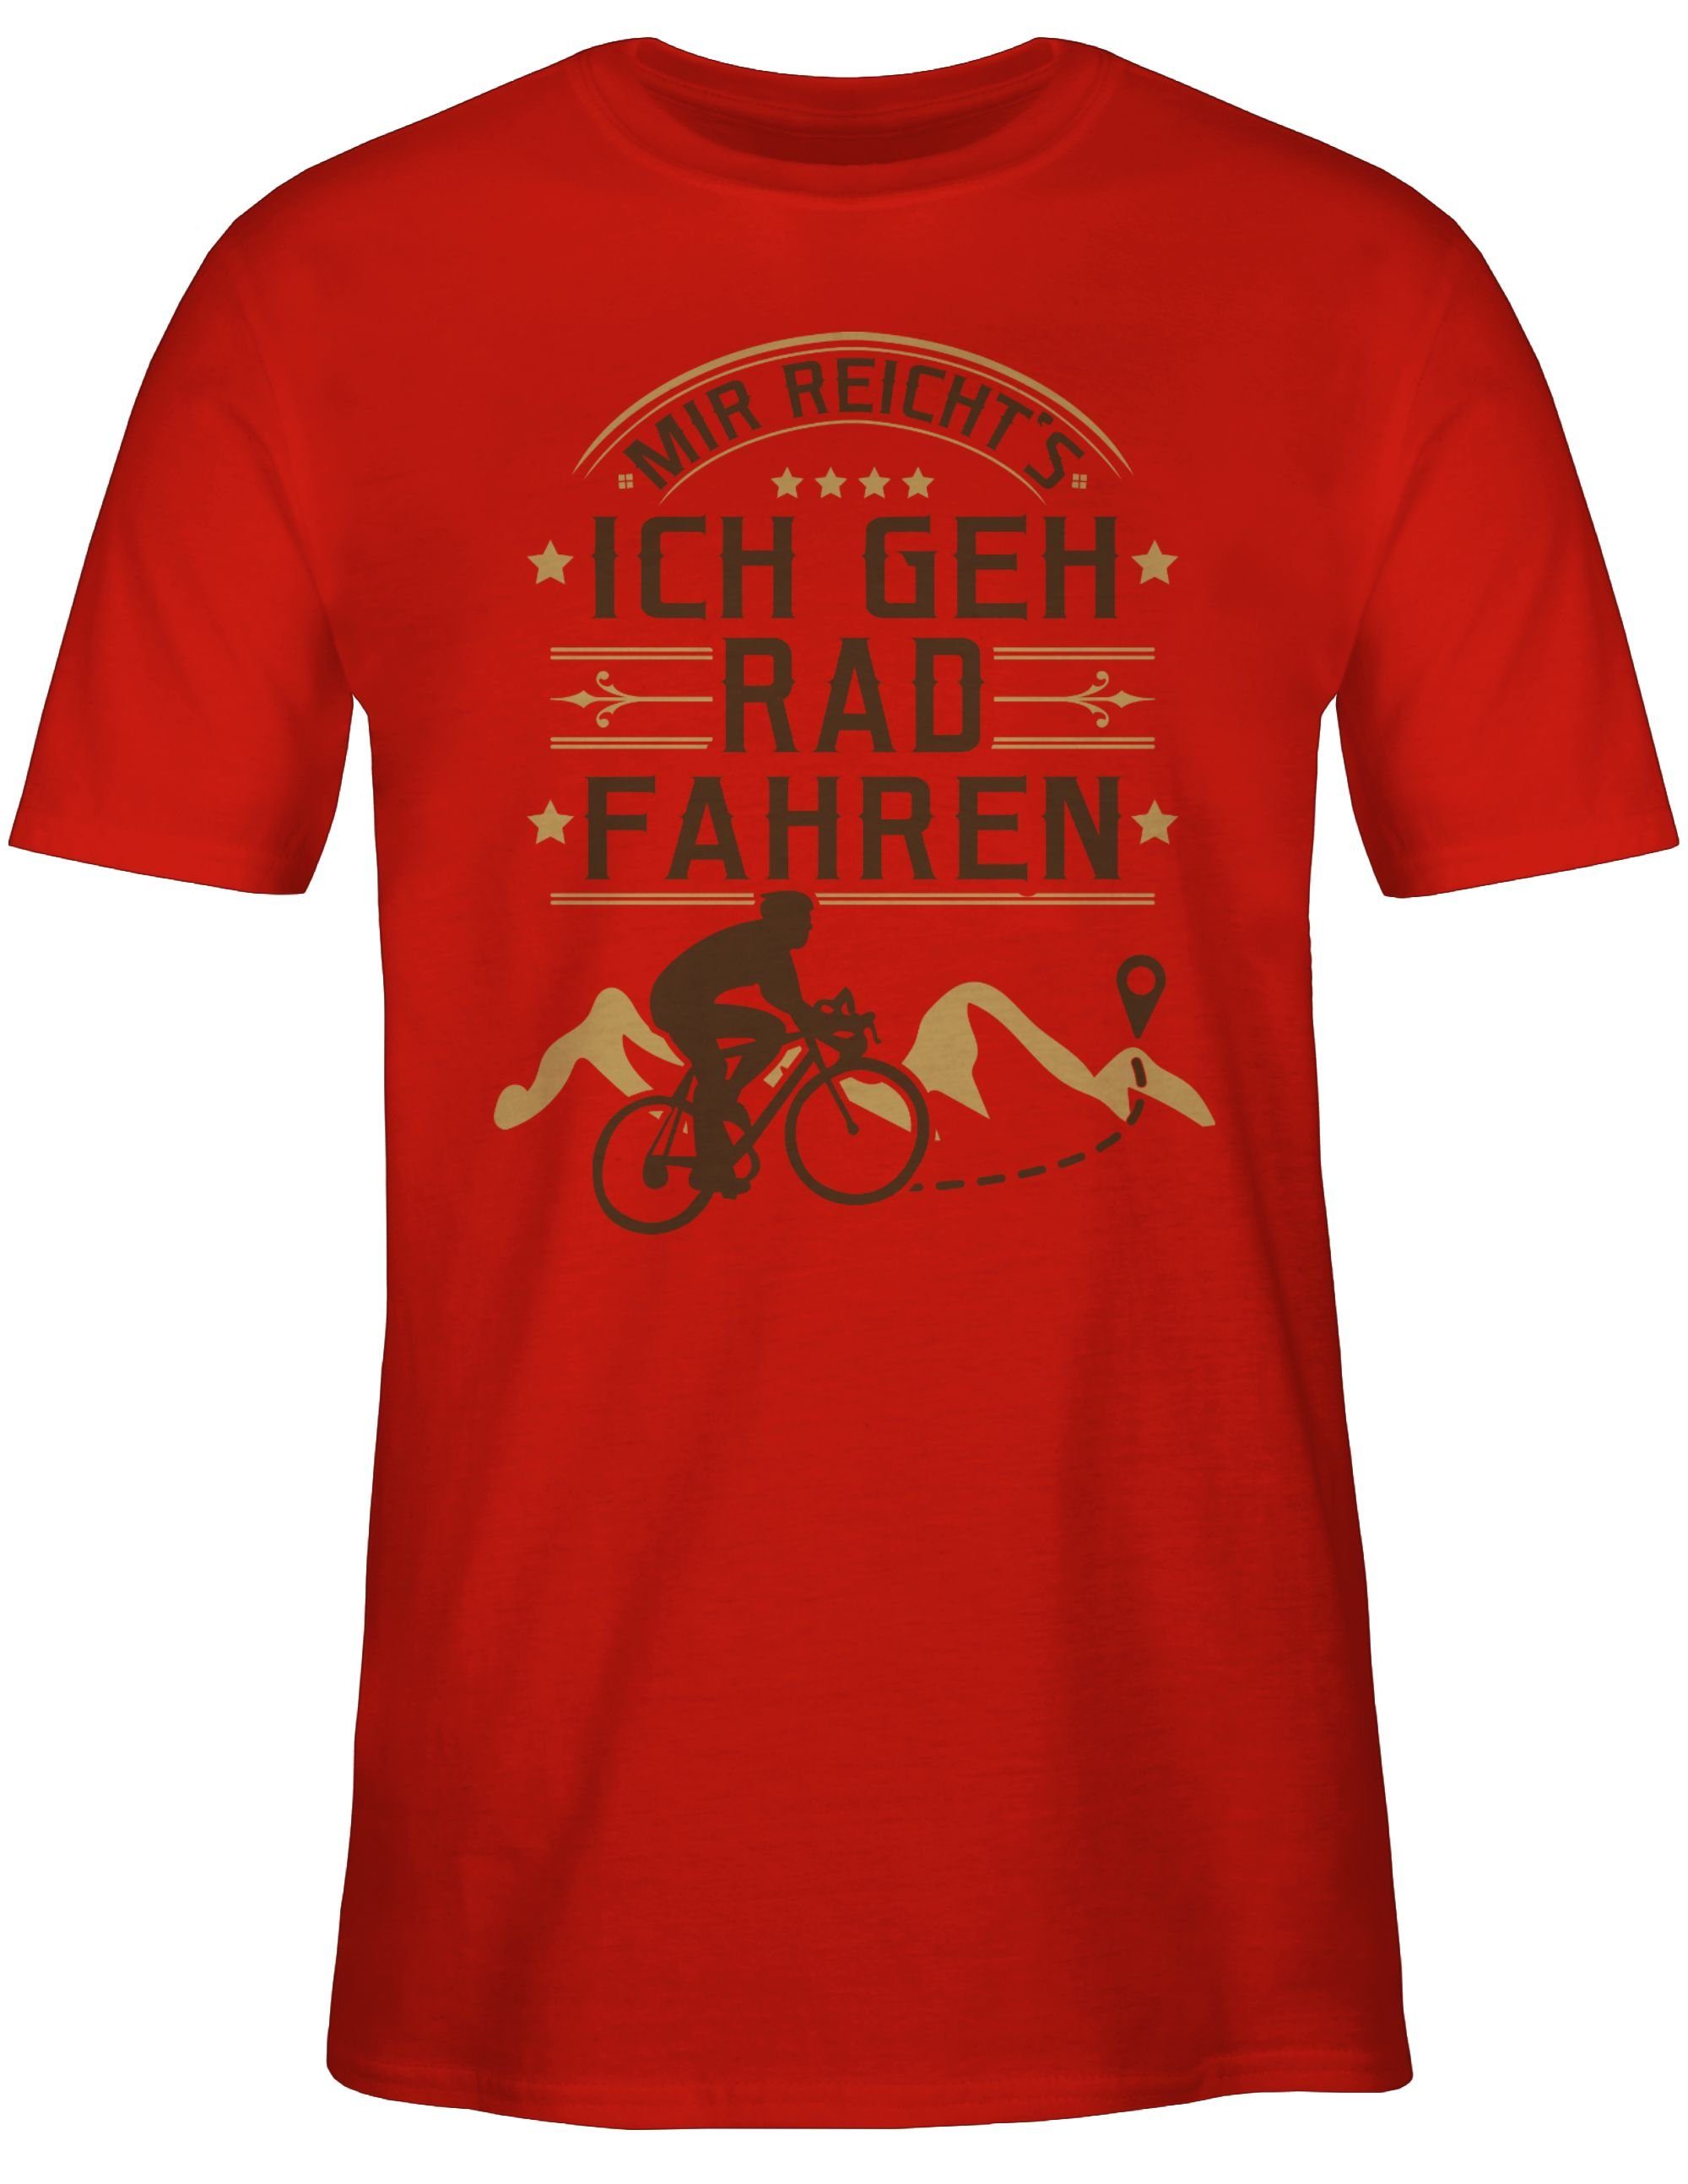 T-Shirt Rot 2 Mir Radsport Fahrrad Shirtracer Bekleidung reicht's fahren Rad